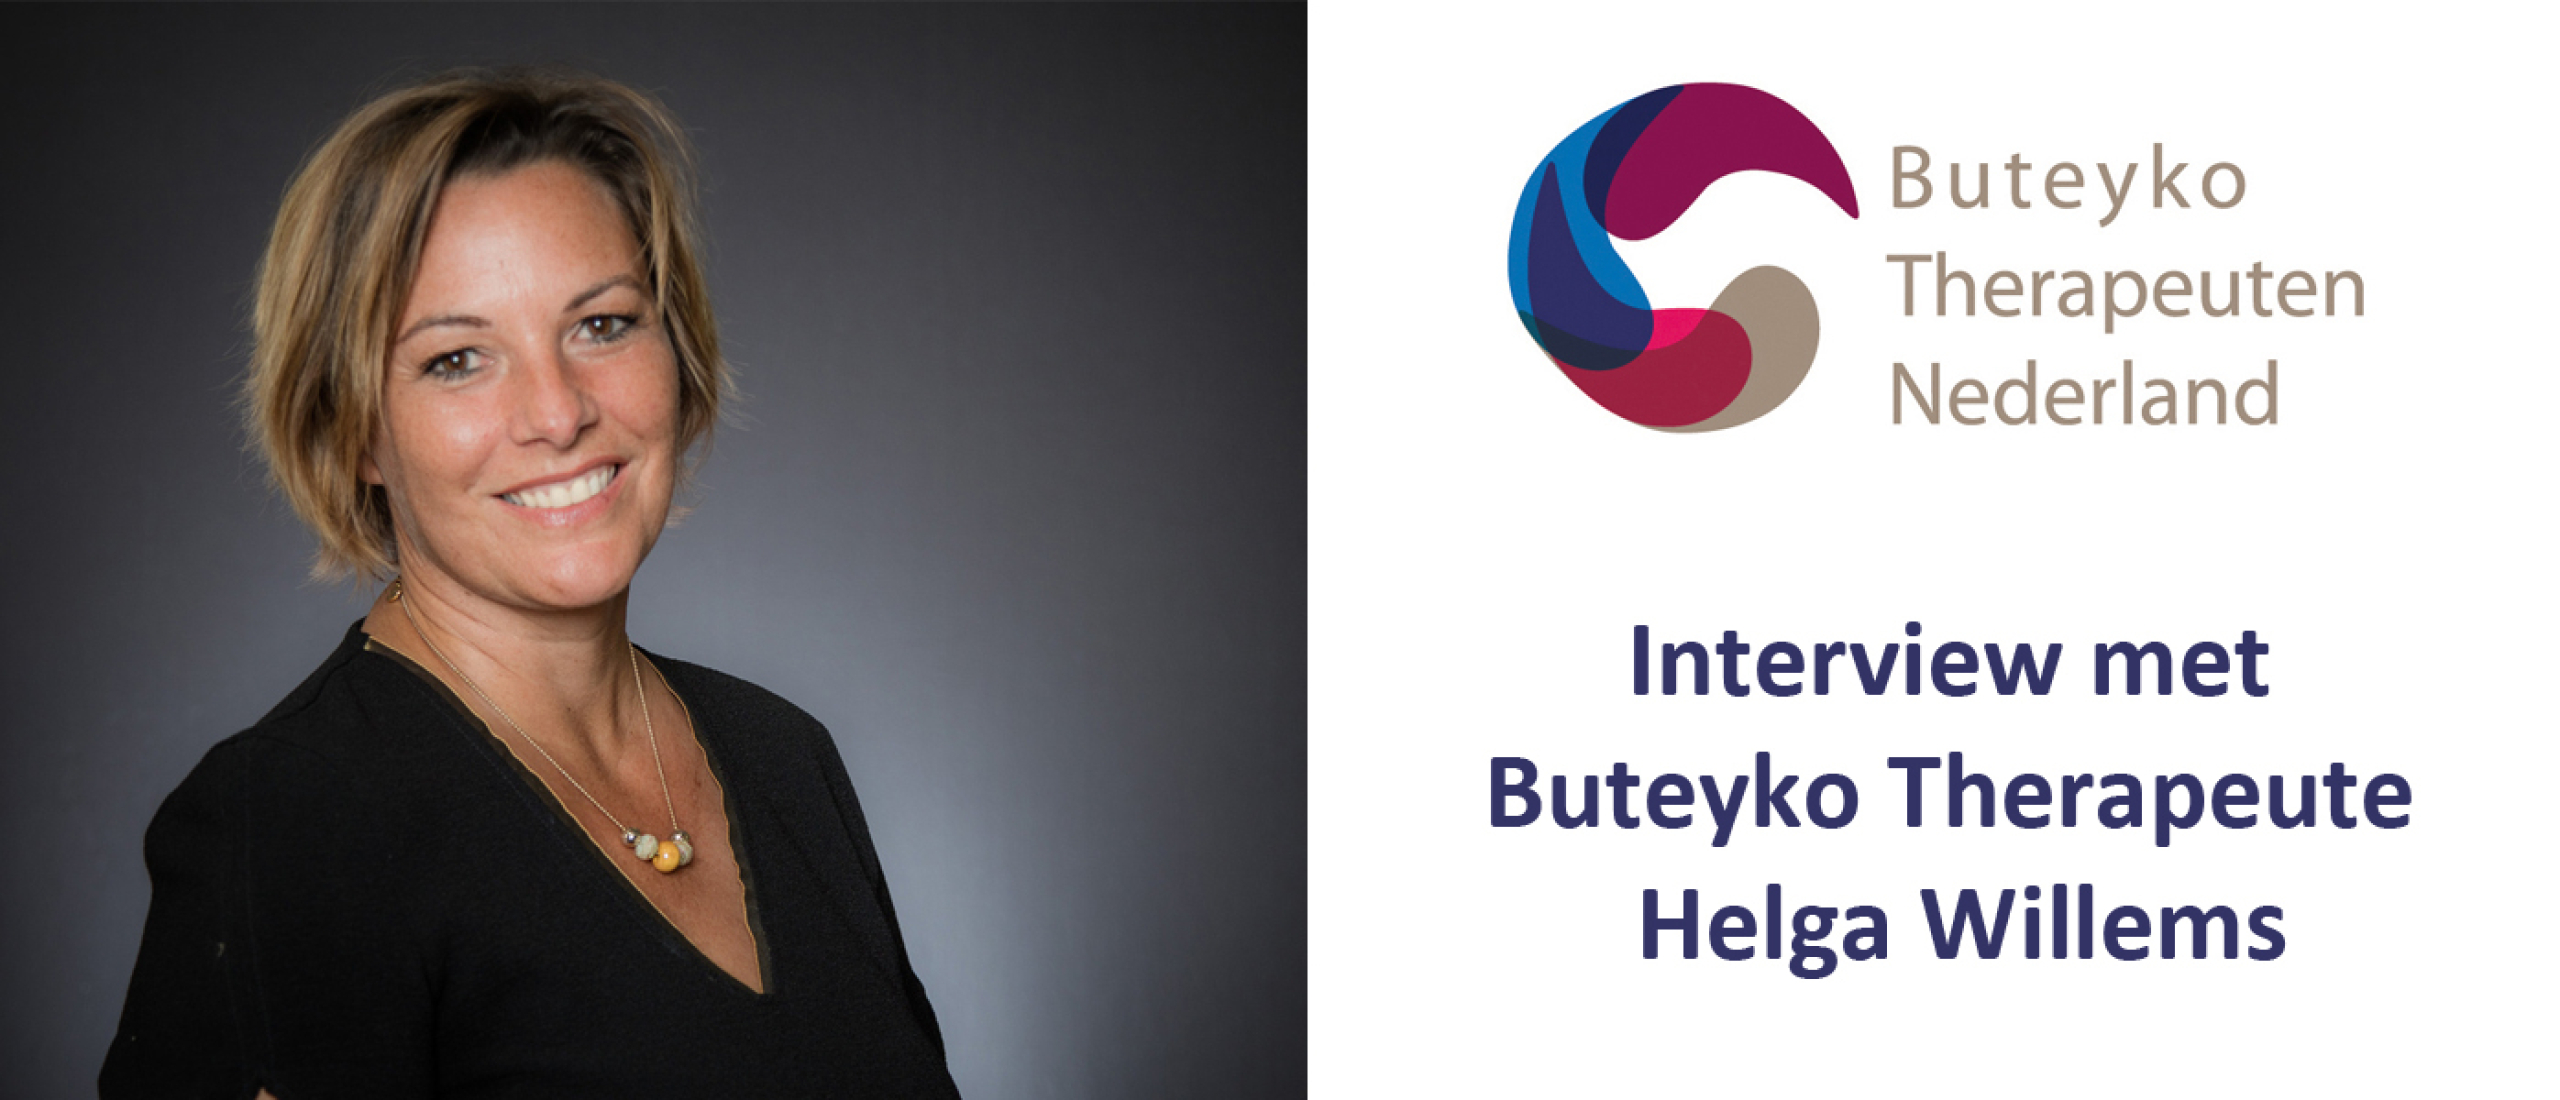 14 vragen aan de Belgische Buteyko therapeute Helga Willems